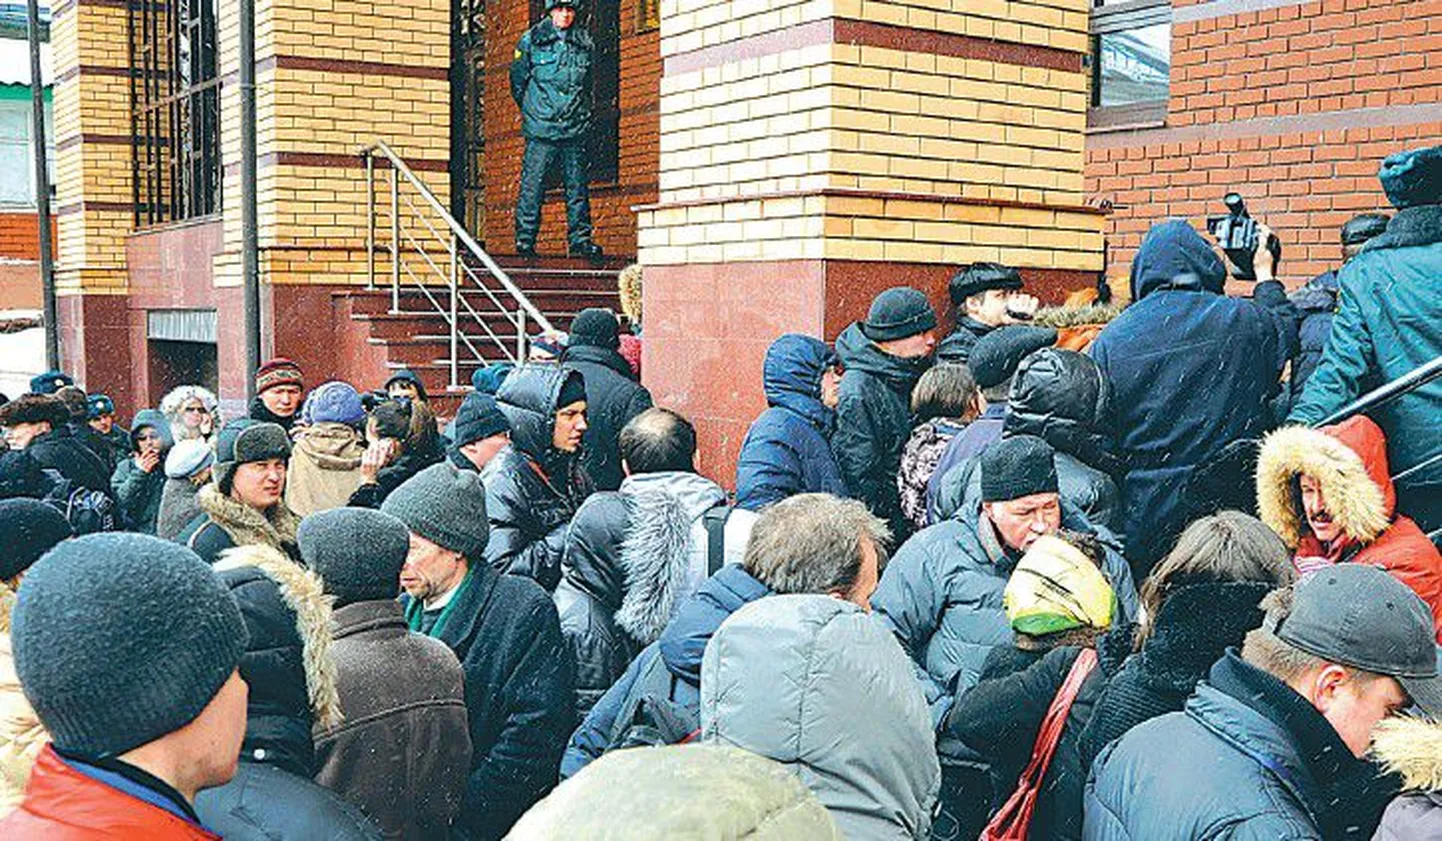 На прошлой неделе многие жертвы полицейского произвола или их родственники хотели встретиться с членами Следственного комитета, которые приехали в Казань из Москвы, чтобы передать им свои жалобы.